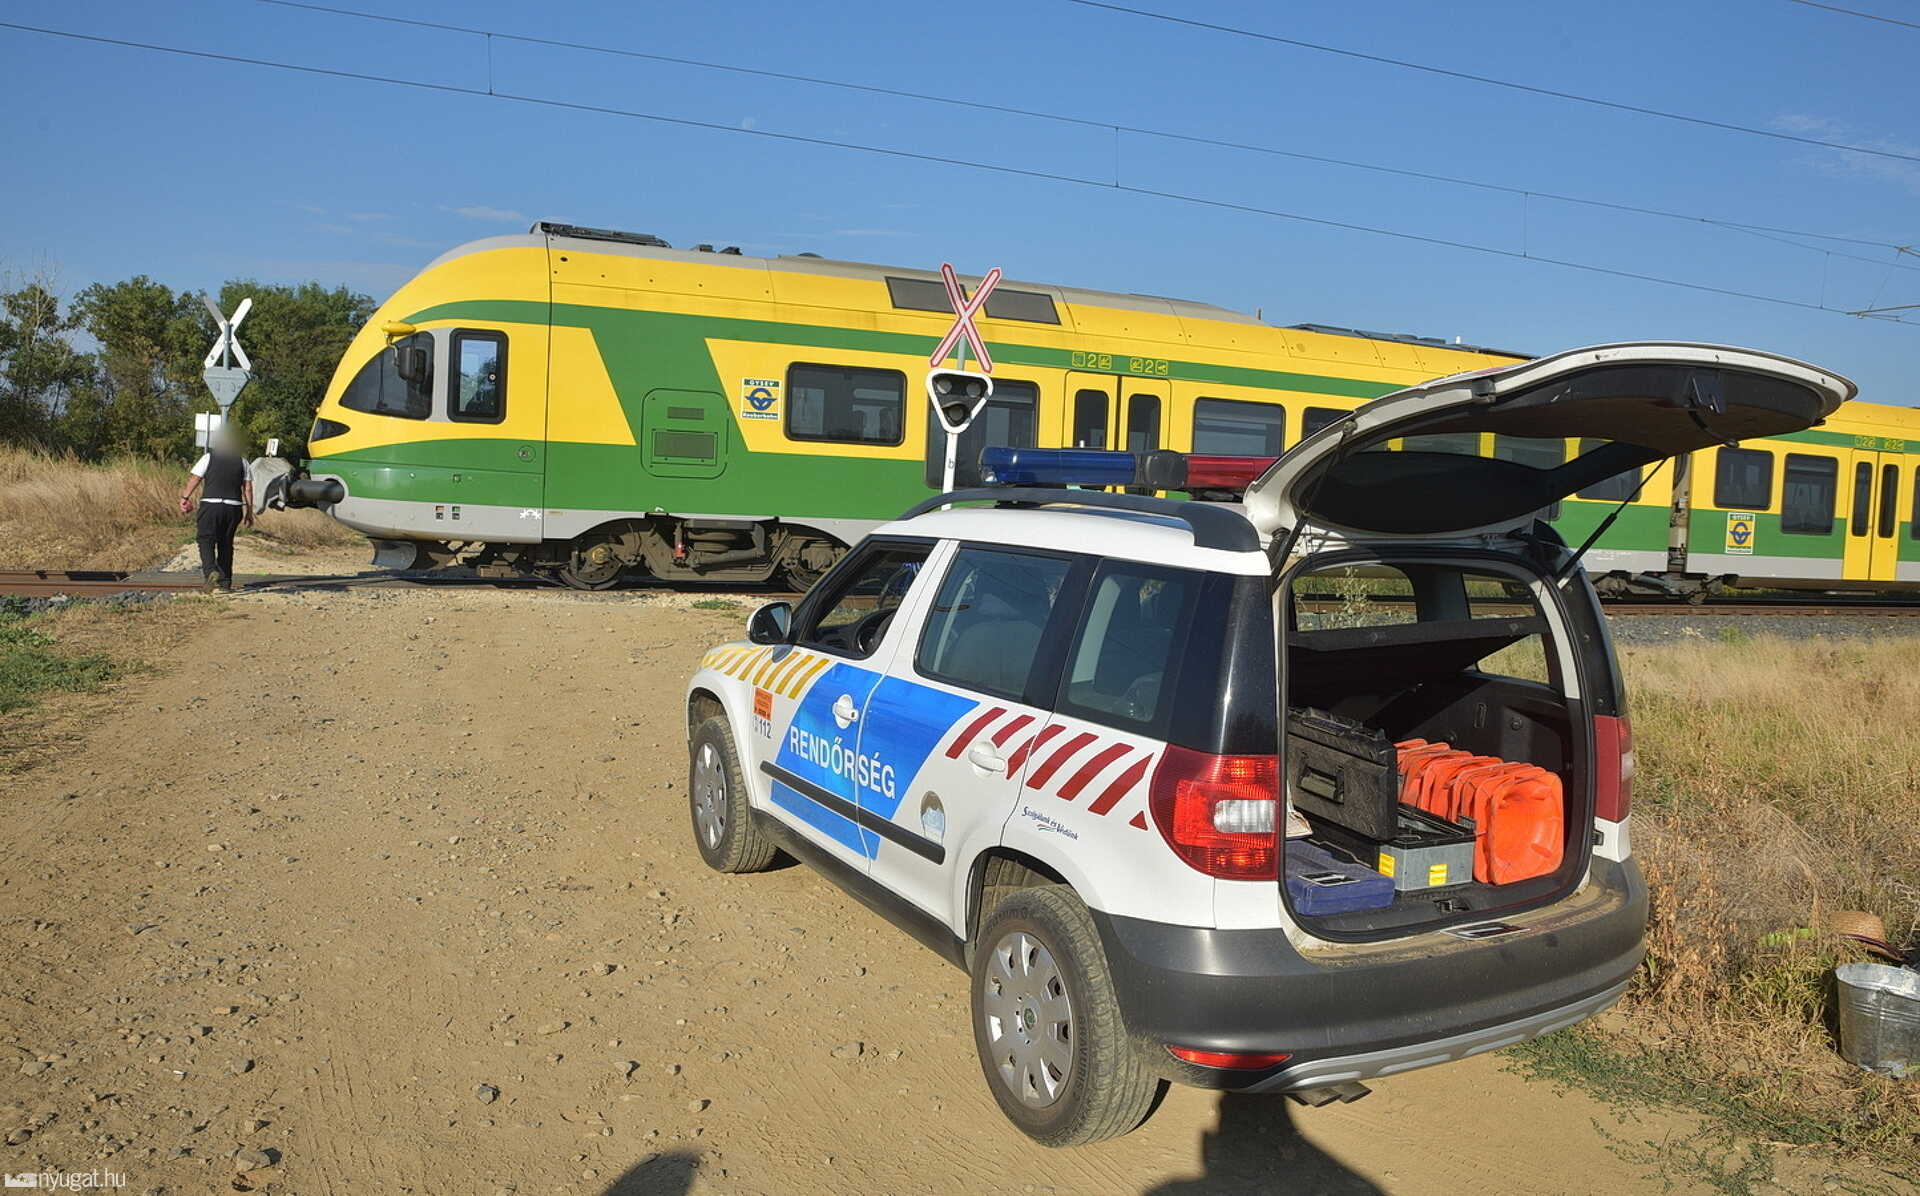 Accident de train à Sorkikapolna : il marchait entre les voies et faisait face à la locomotive, alors il a attendu la mort